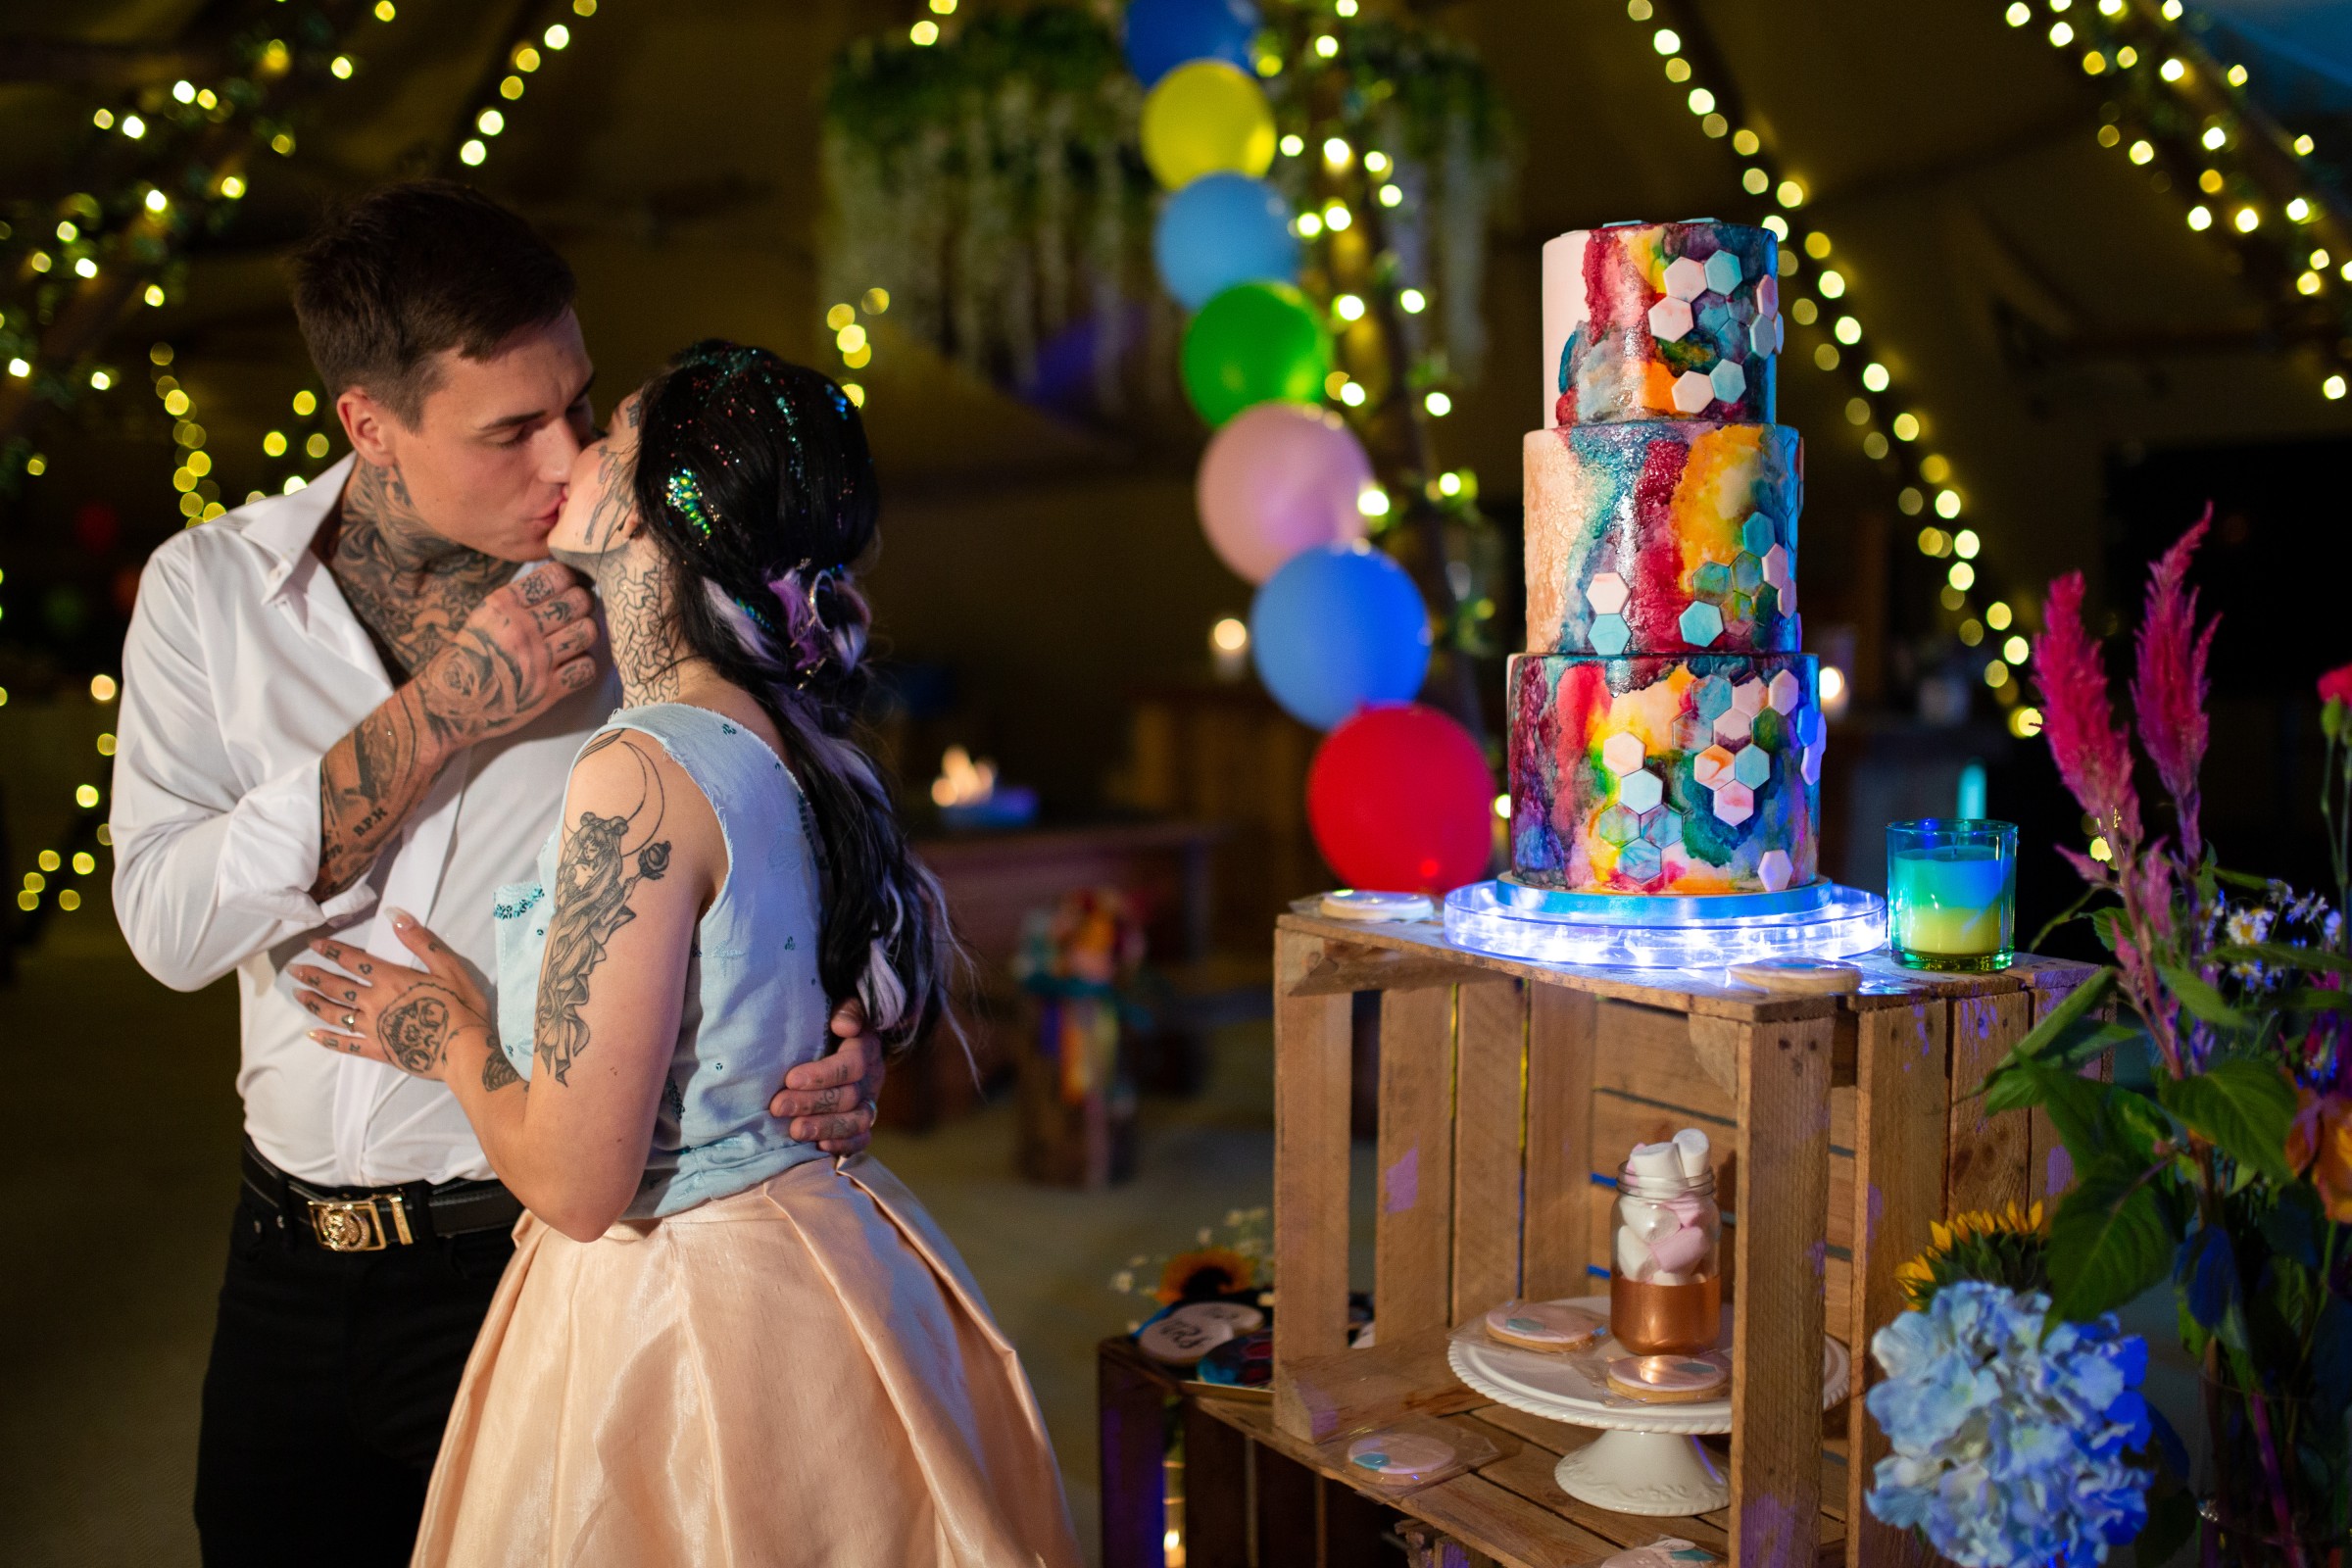 rainbow festival wedding - colourful wedding - quirky wedding ideas - rainbow wedding cake - colourful wedding cake - quirky wedding cake